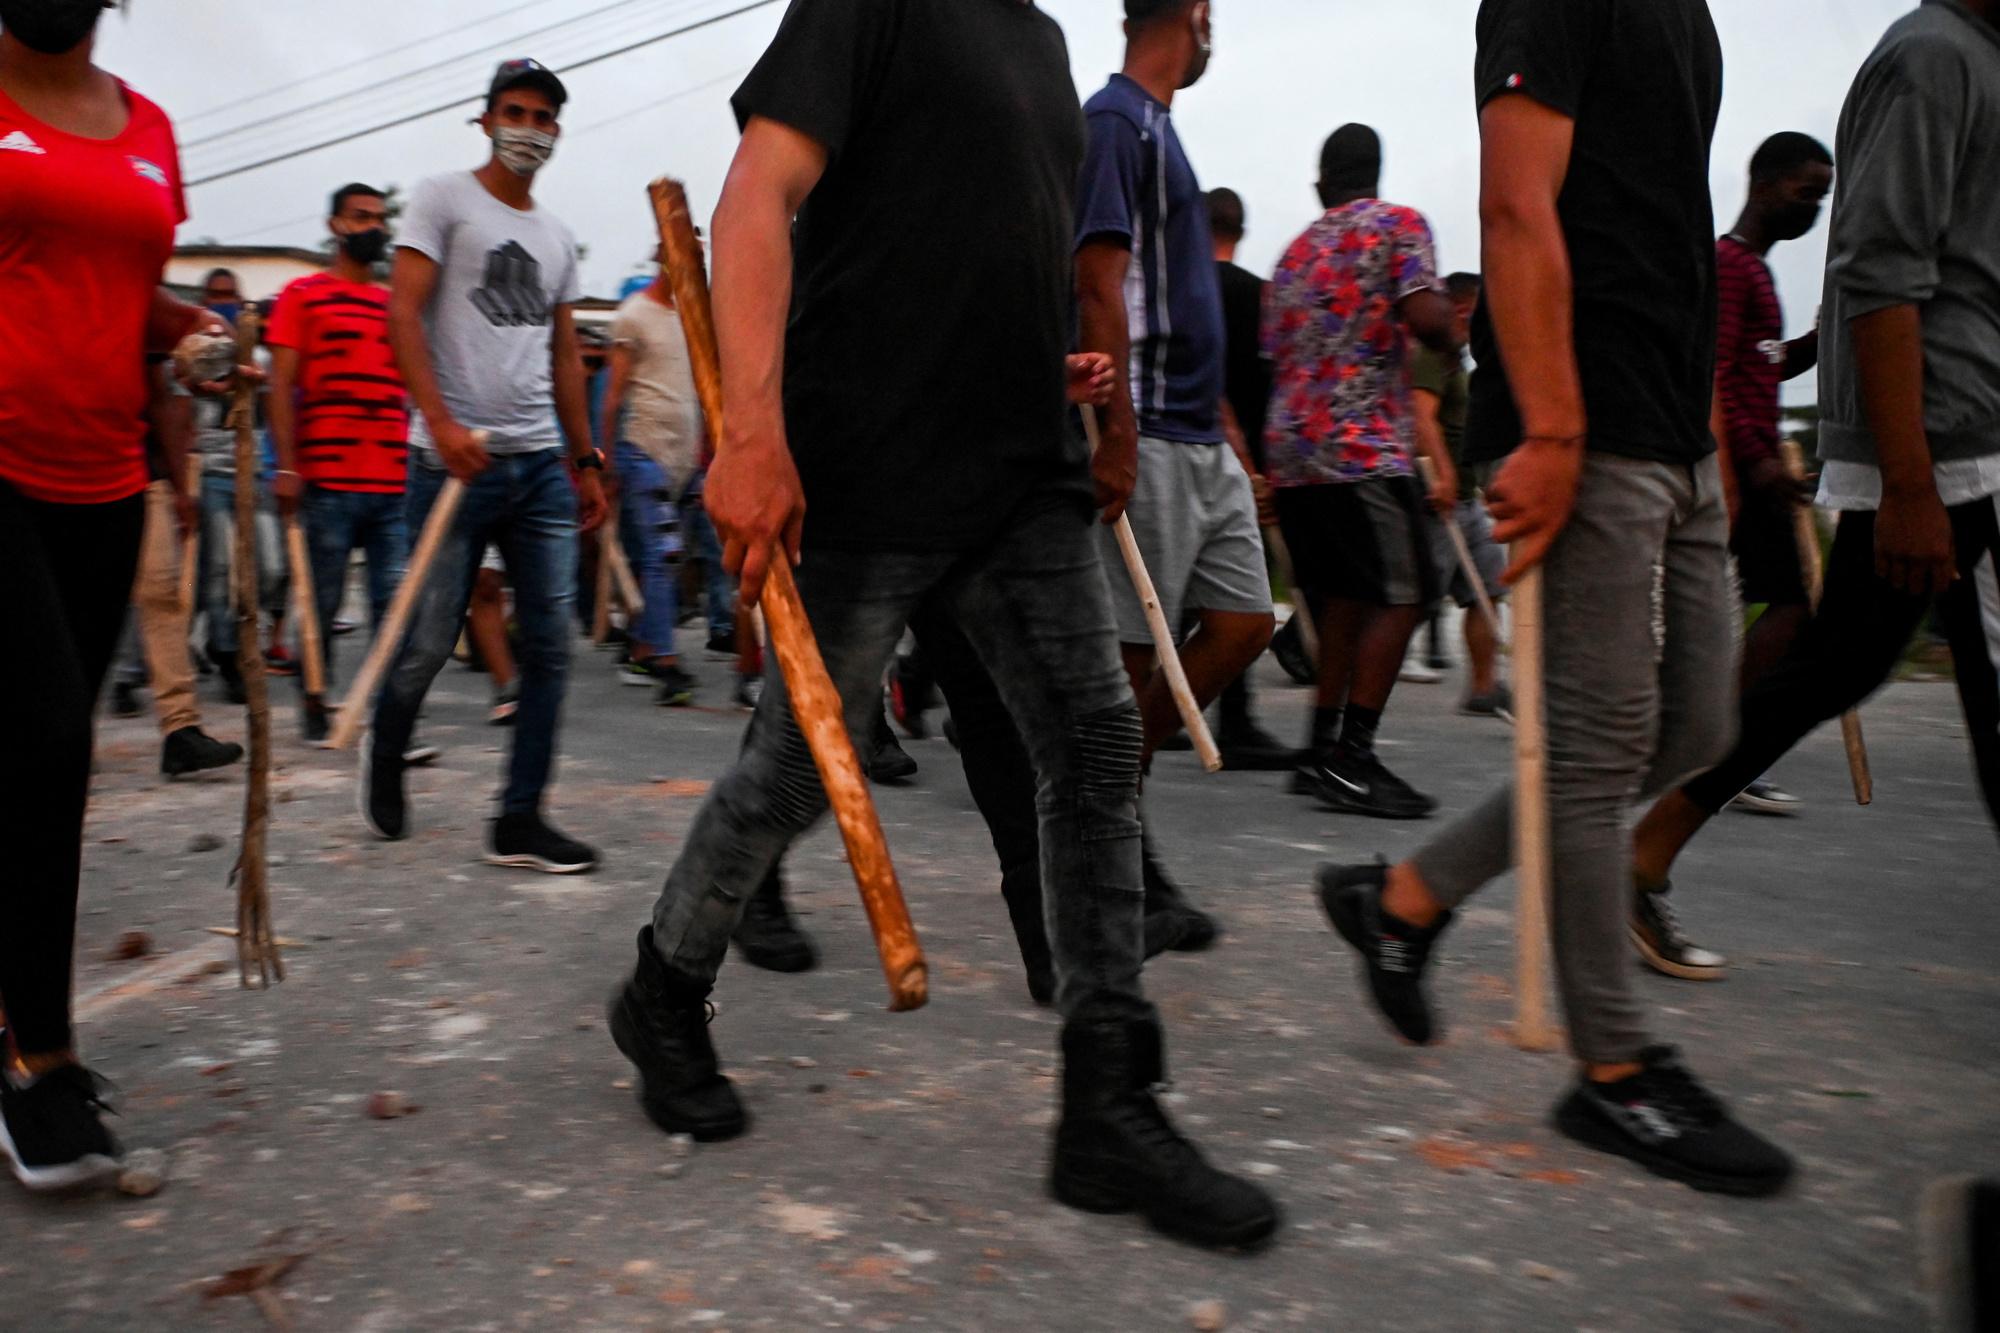 Les Cubains encore sous le choc après les manifestations historiques